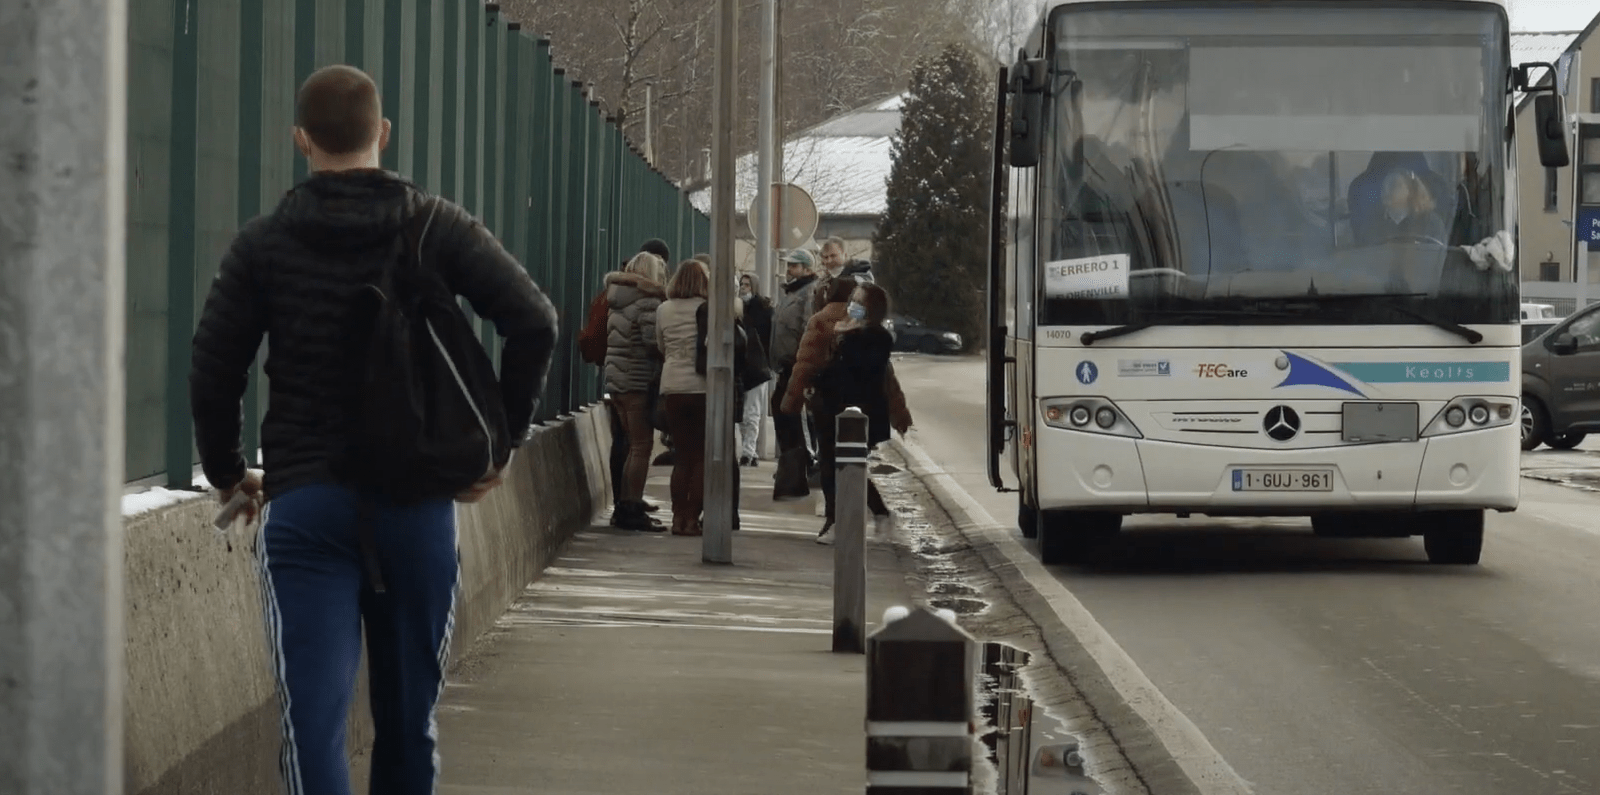 Projection | “S’appauvrir”, un film sur la question de la pauvreté en Belgique